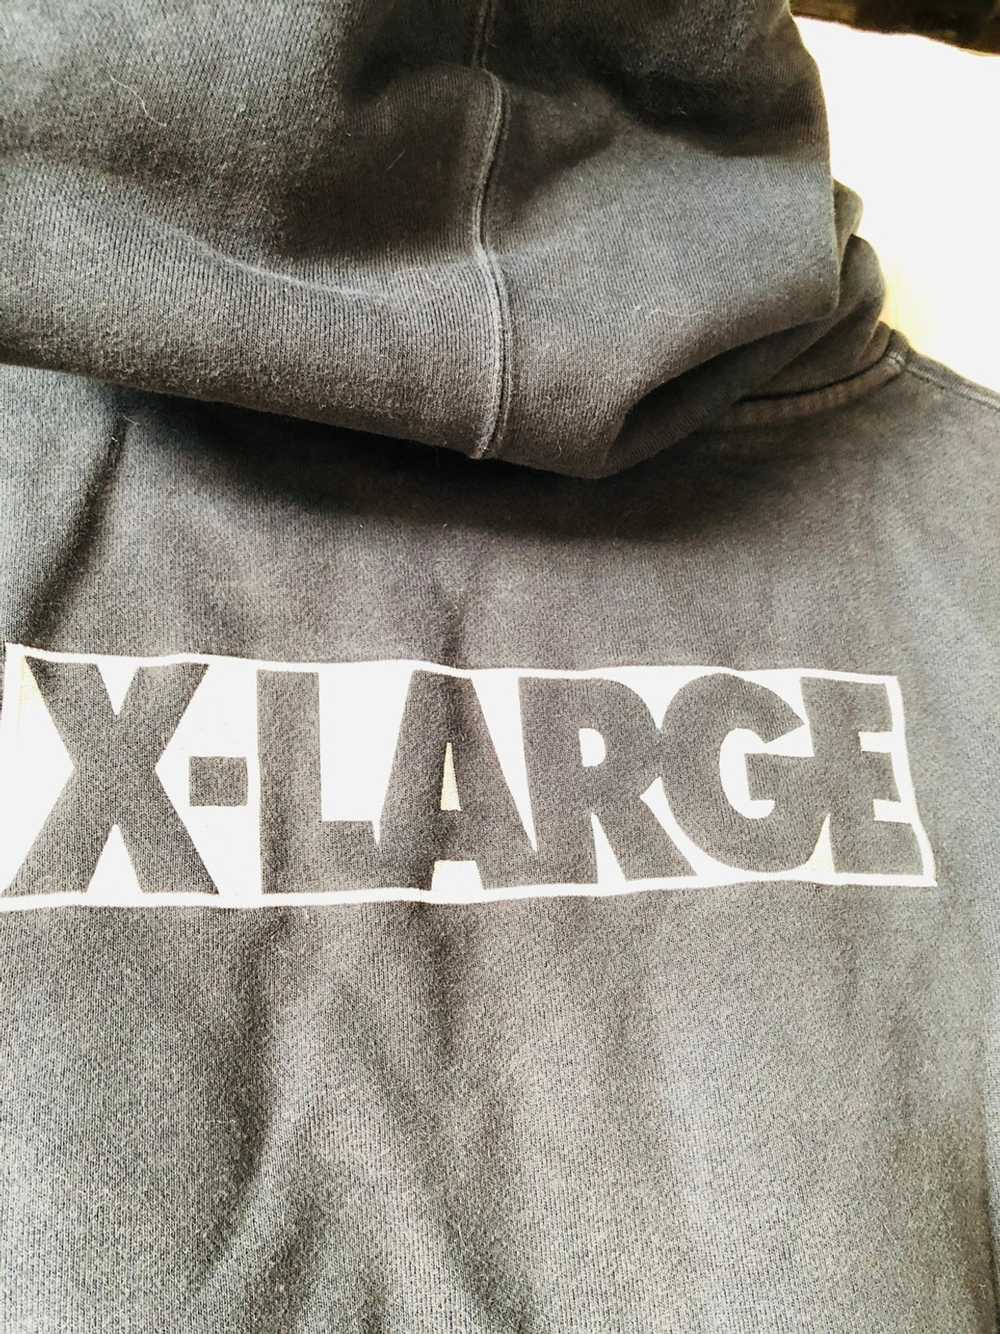 Xlarge Sweater zipper Xlarge Los Angeles - image 2